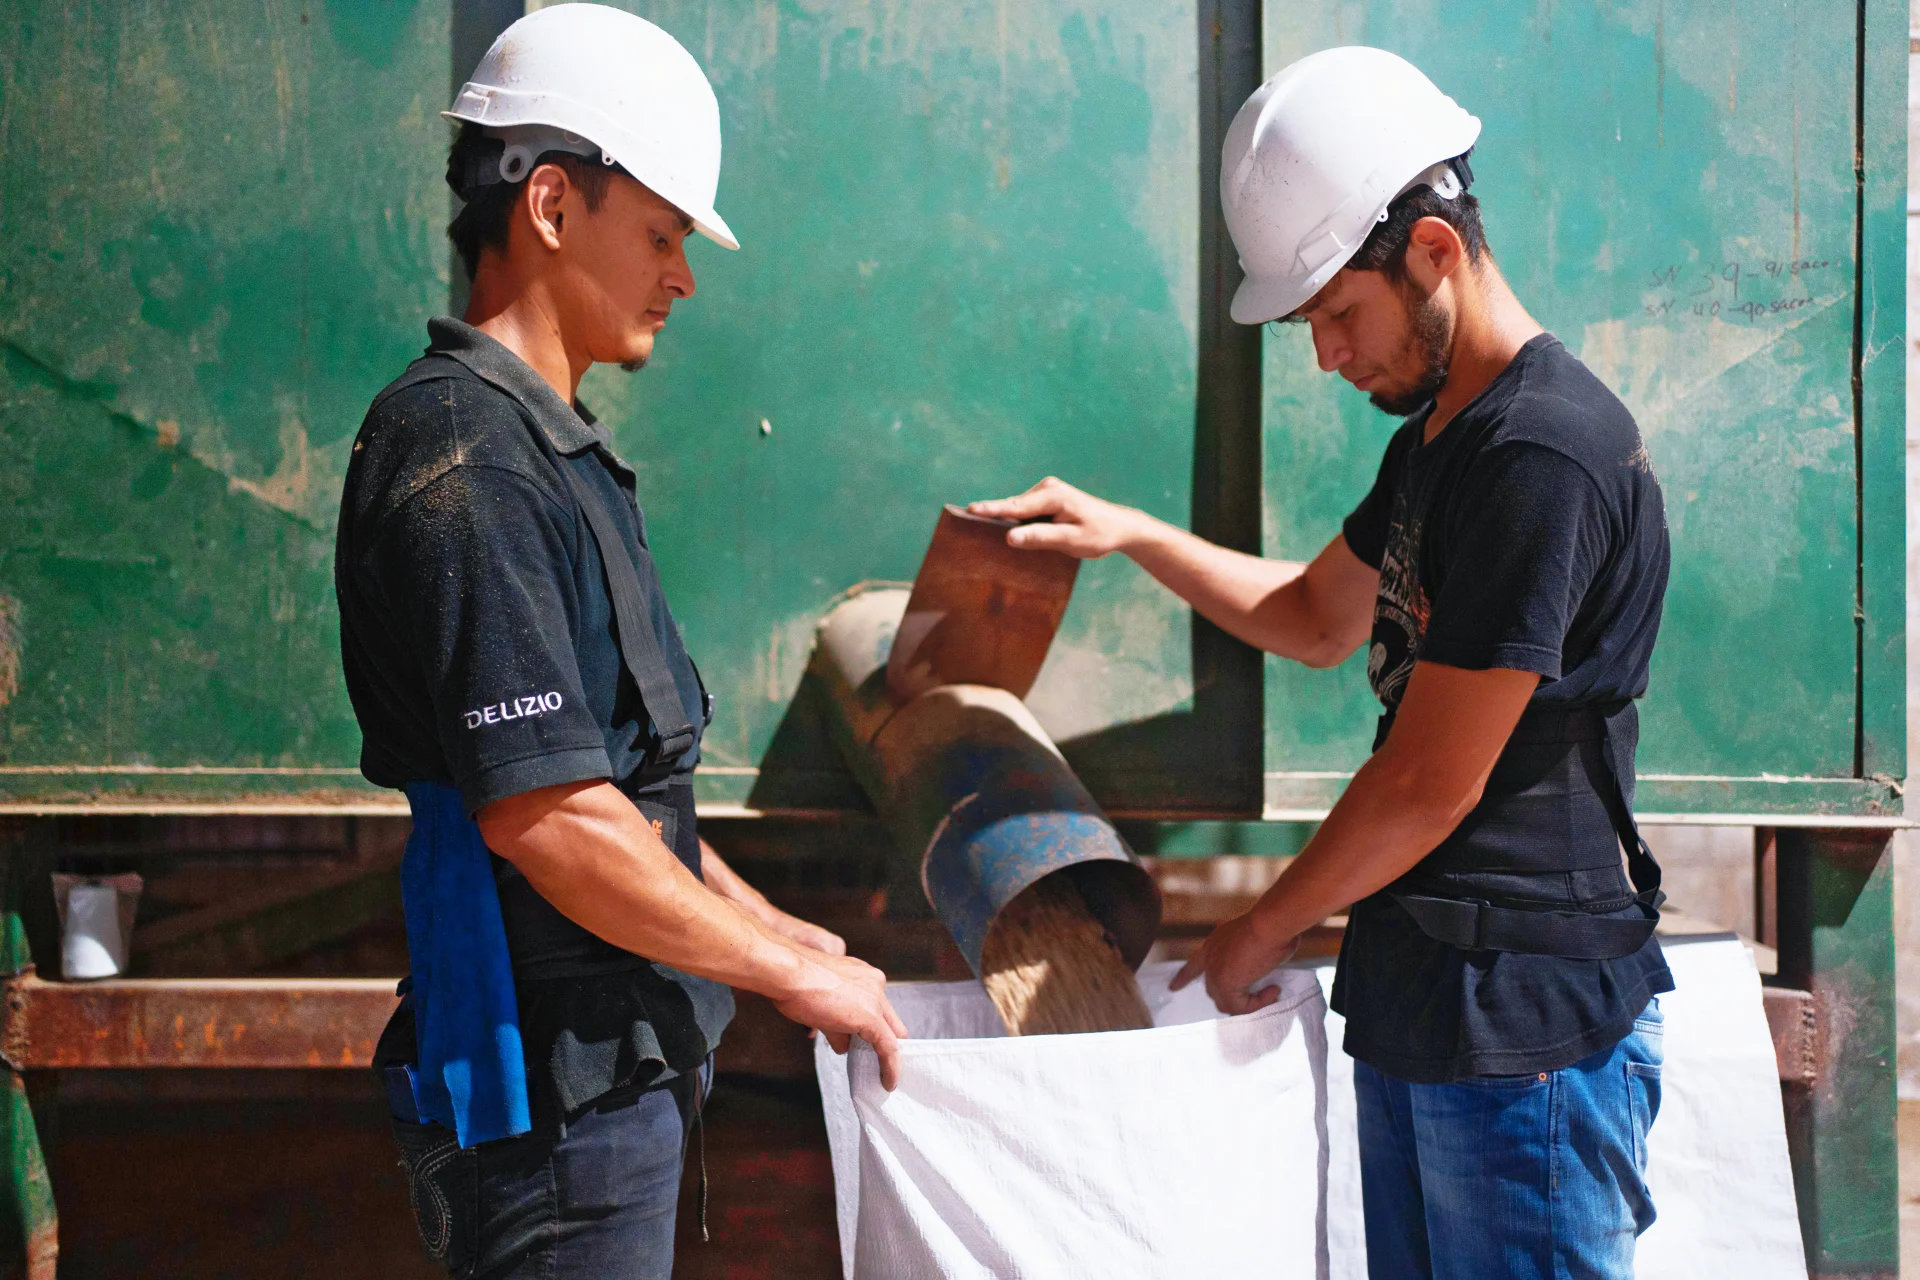 Deux ouvriers du bâtiment, dont un avec une chemise Delizio.